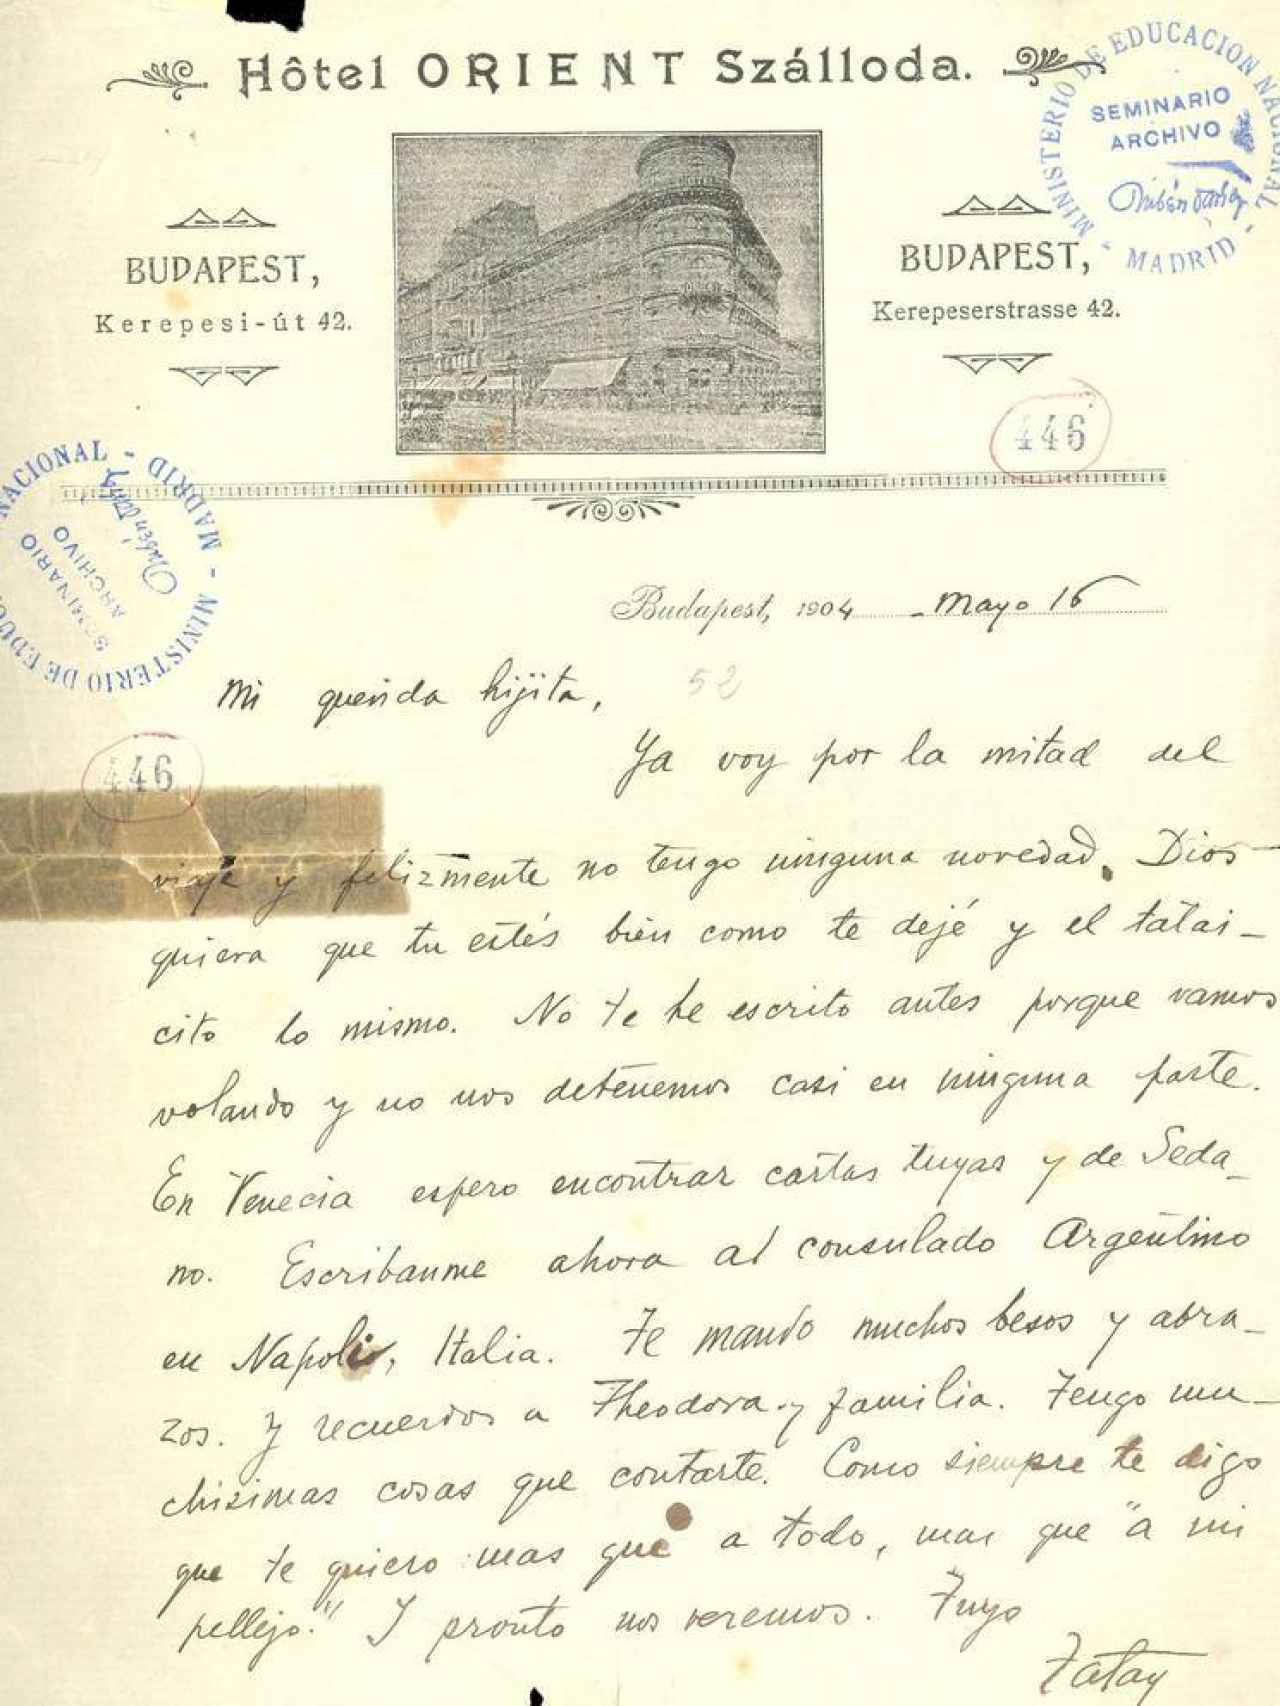 Carta de Rubén enviada a Francisca desde Budapest